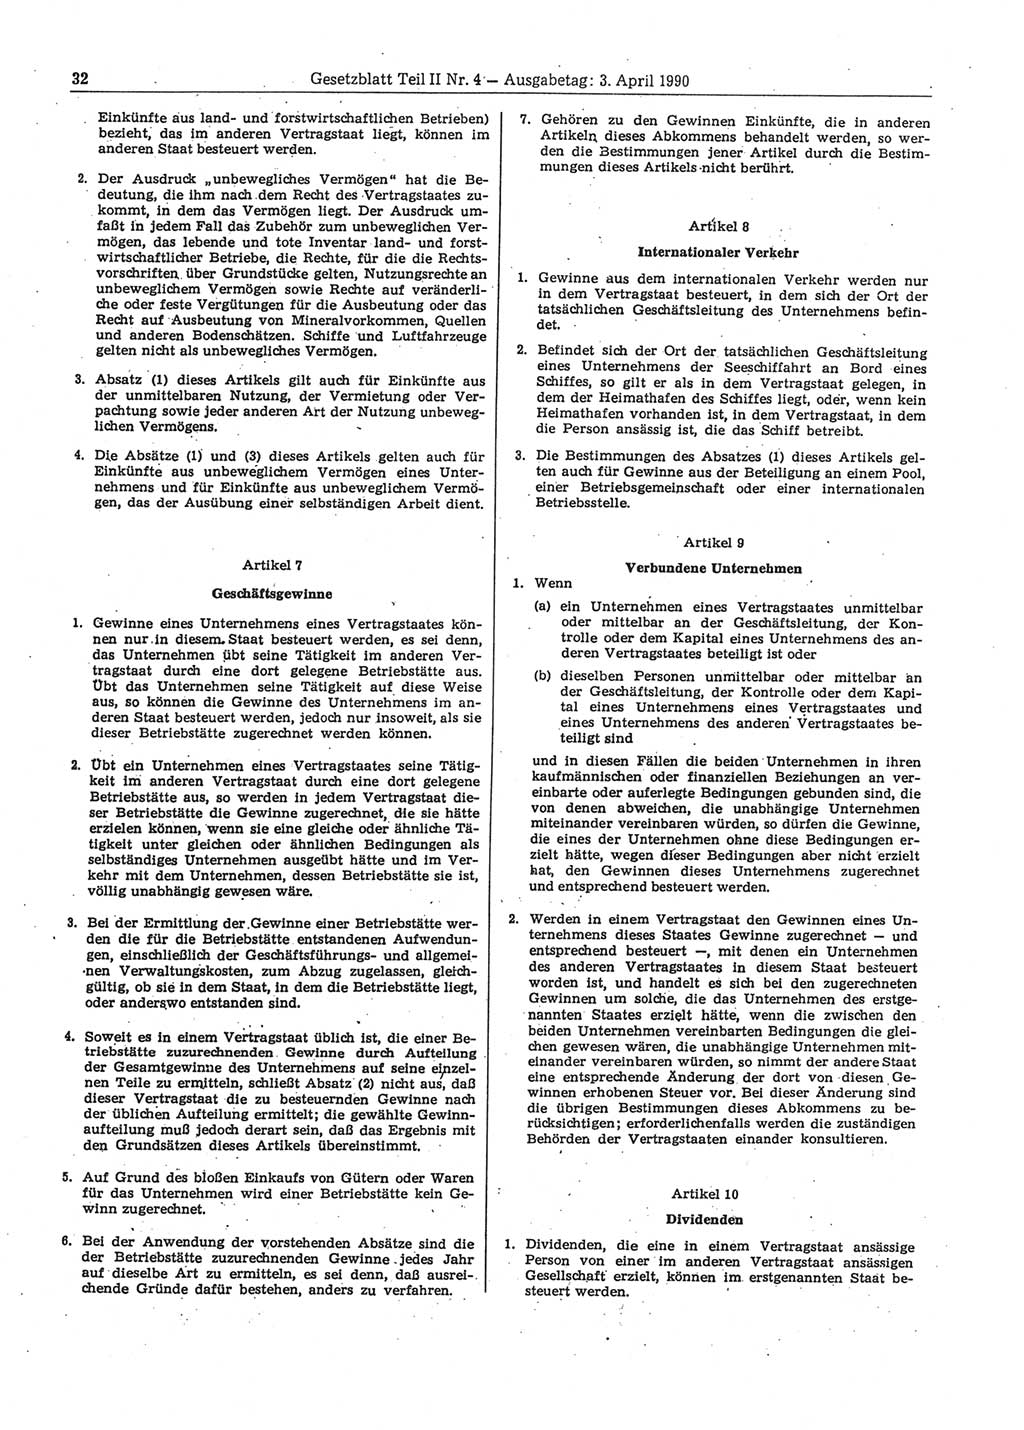 Gesetzblatt (GBl.) der Deutschen Demokratischen Republik (DDR) Teil ⅠⅠ 1990, Seite 32 (GBl. DDR ⅠⅠ 1990, S. 32)